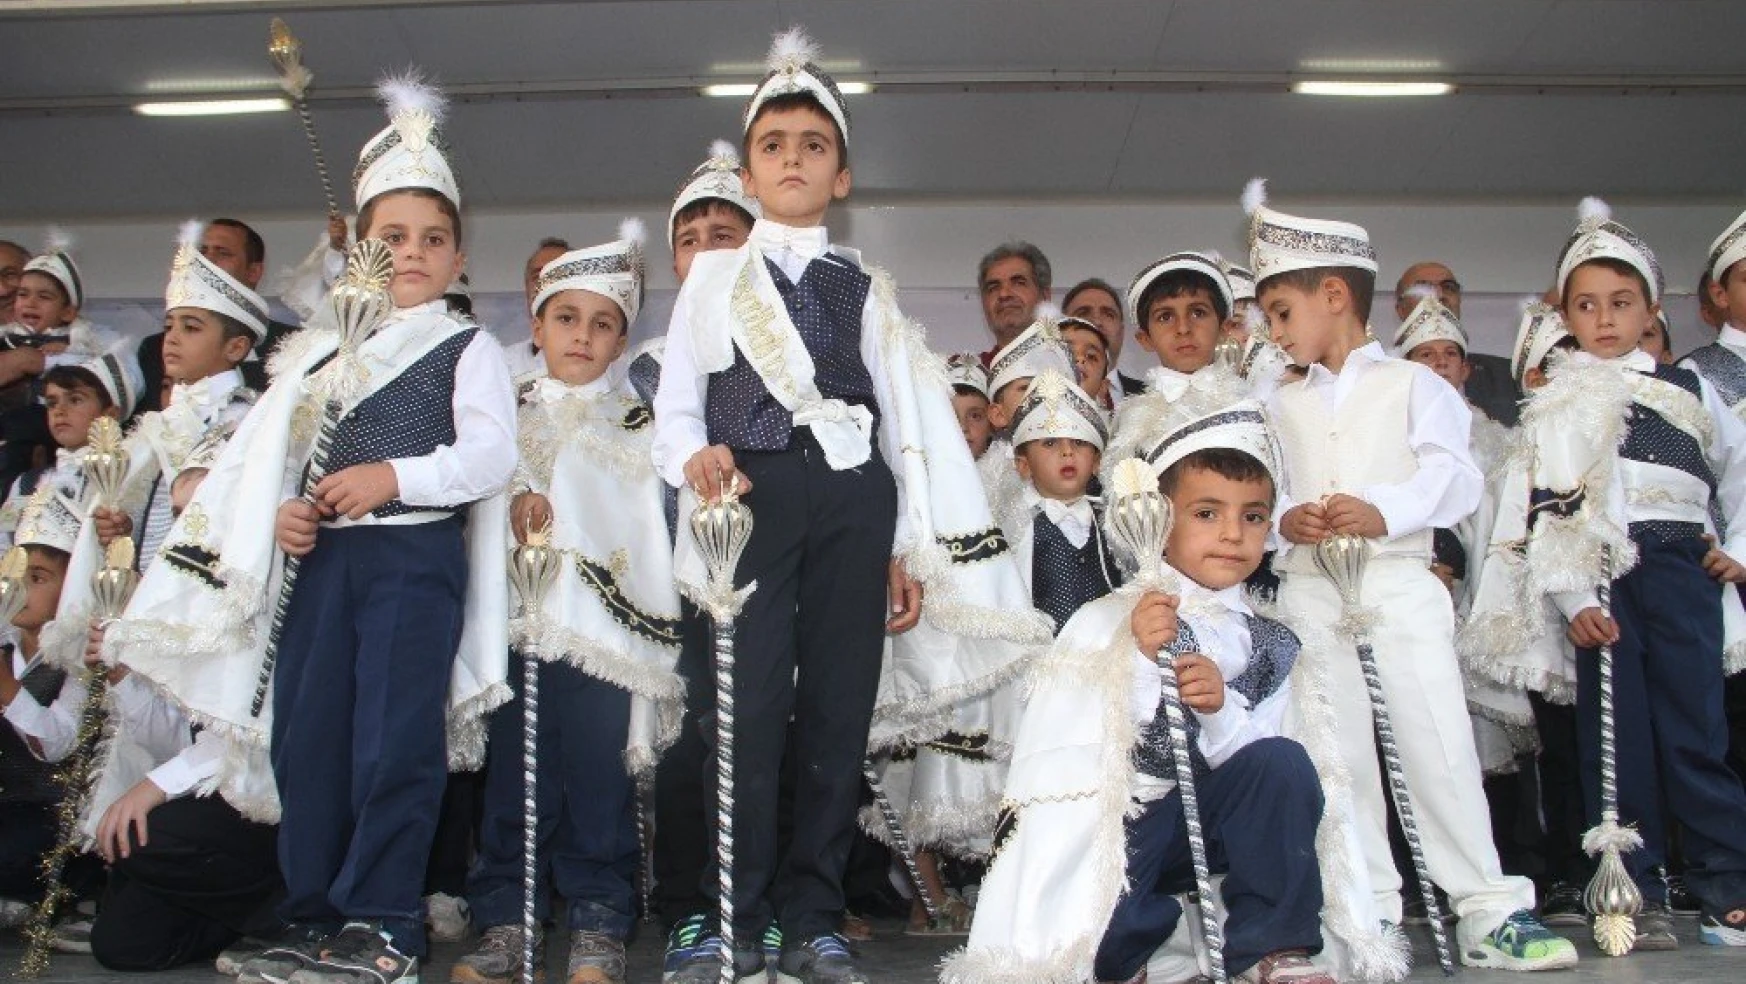 Akçakiraz'da 104 Çocuk İçin Sünnet Şöleni Düzenlendi